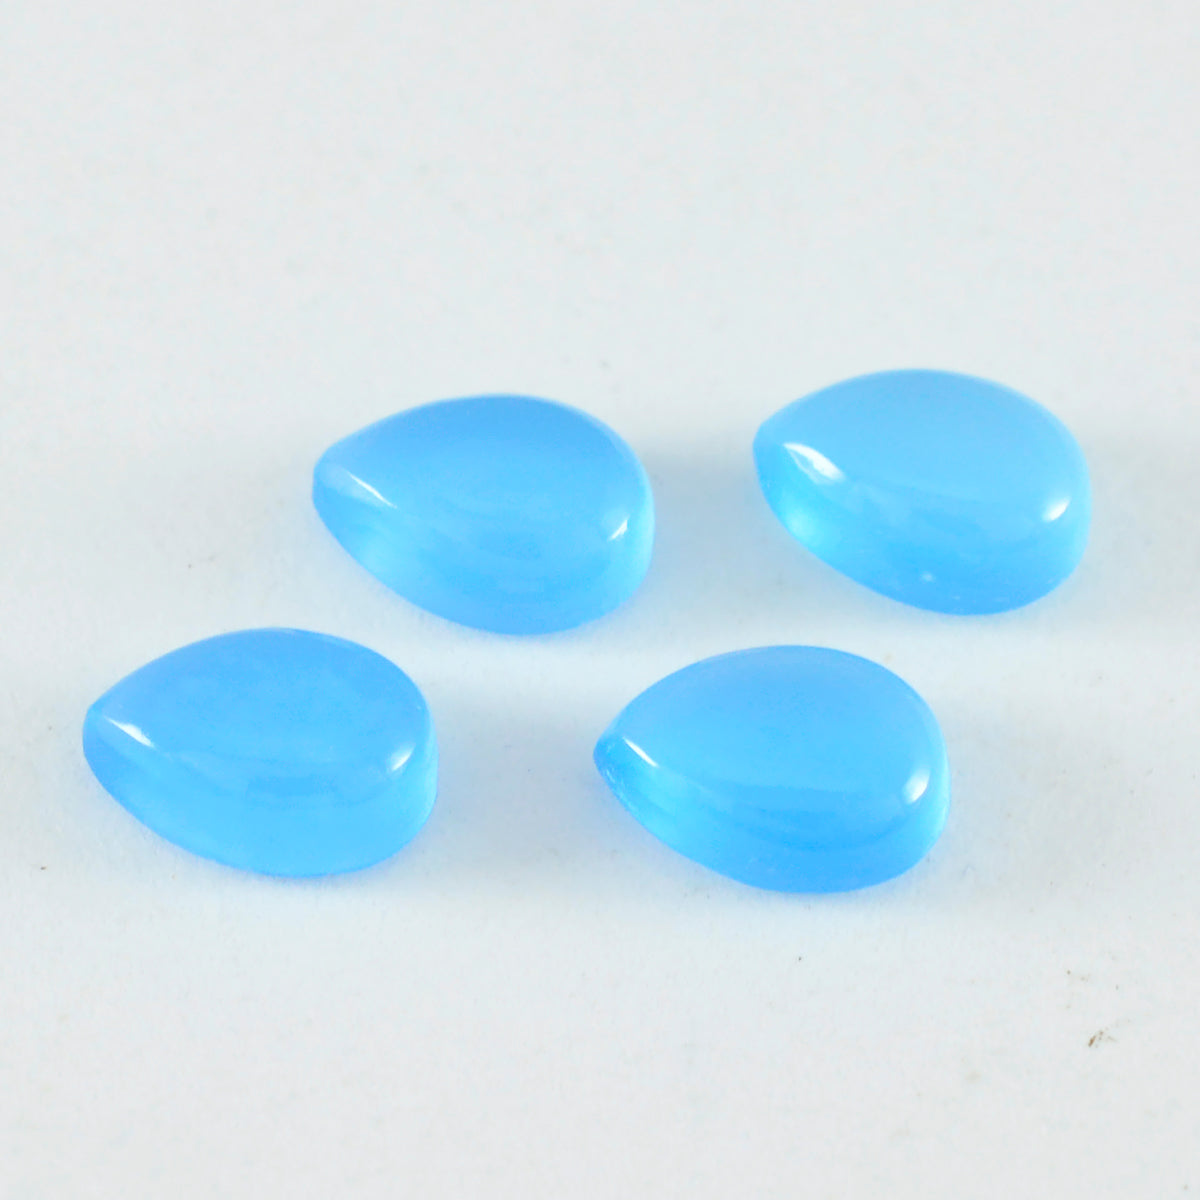 Riyogems 1 Stück blauer Chalcedon-Cabochon, 6 x 9 mm, Birnenform, AAA-Qualität, lose Edelsteine